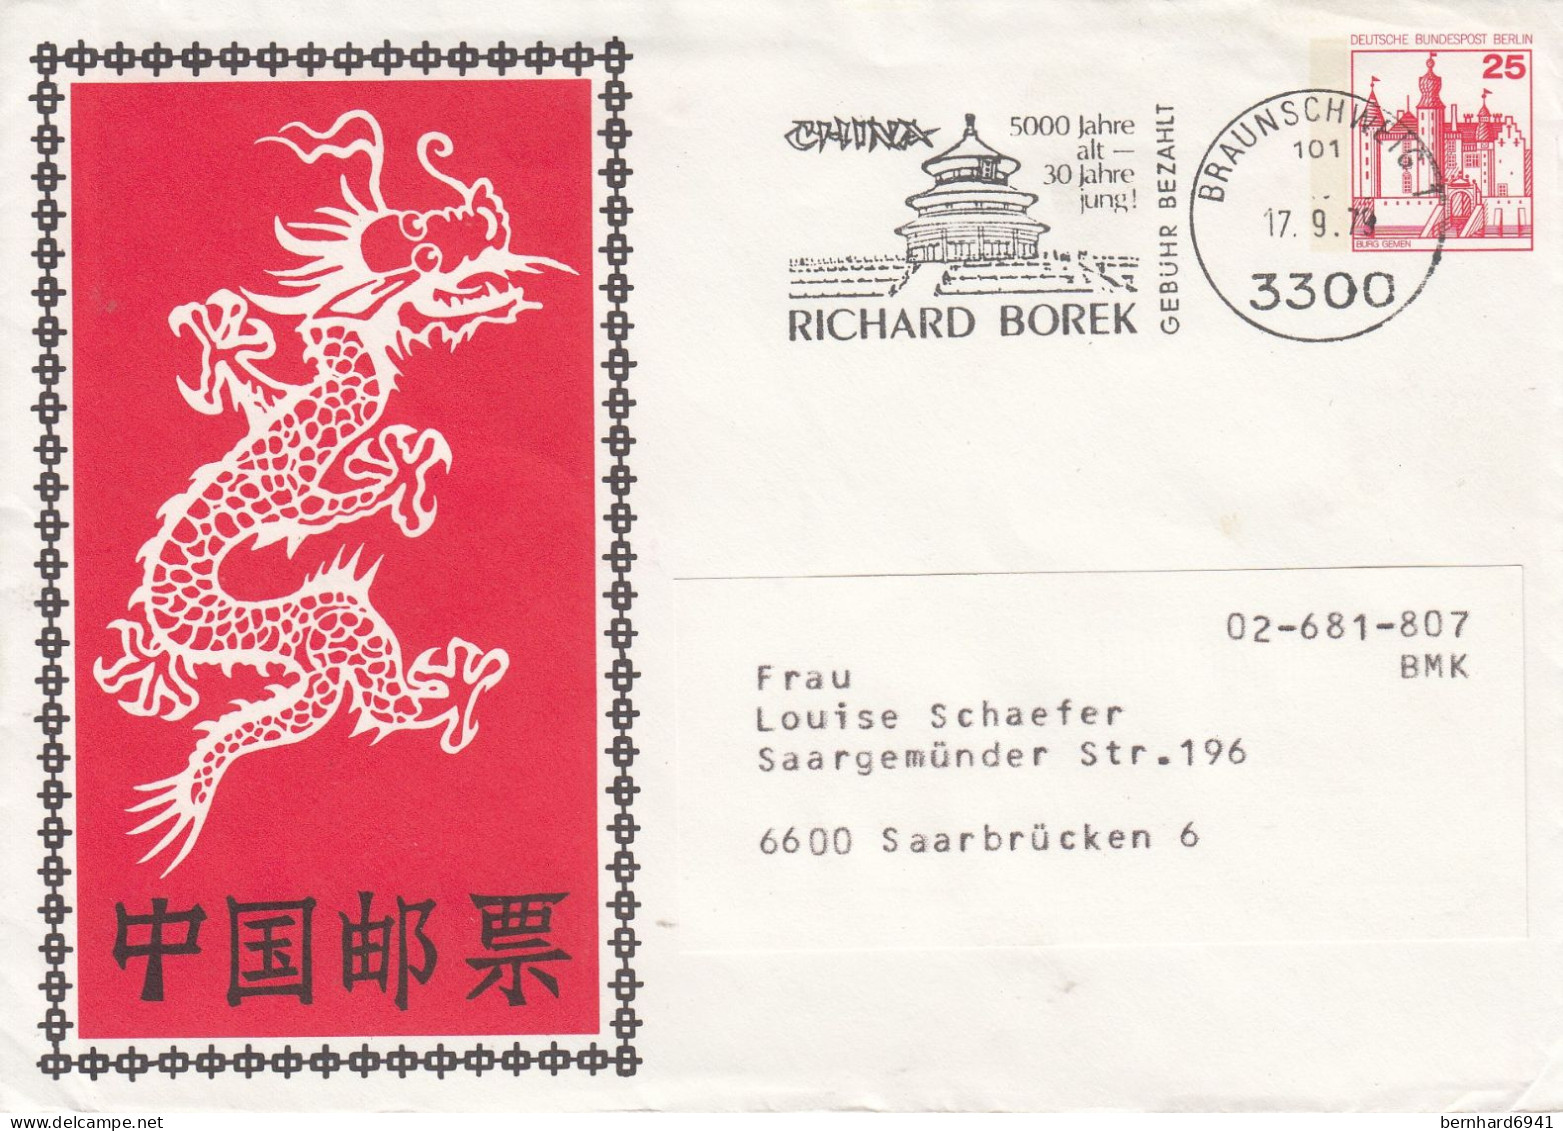 B PU 67/1 Chinischer Drache Und Schriftzeichen - Rückseite Mit 3300 Braunschweig, Braunschweig 1 - Privatumschläge - Gebraucht